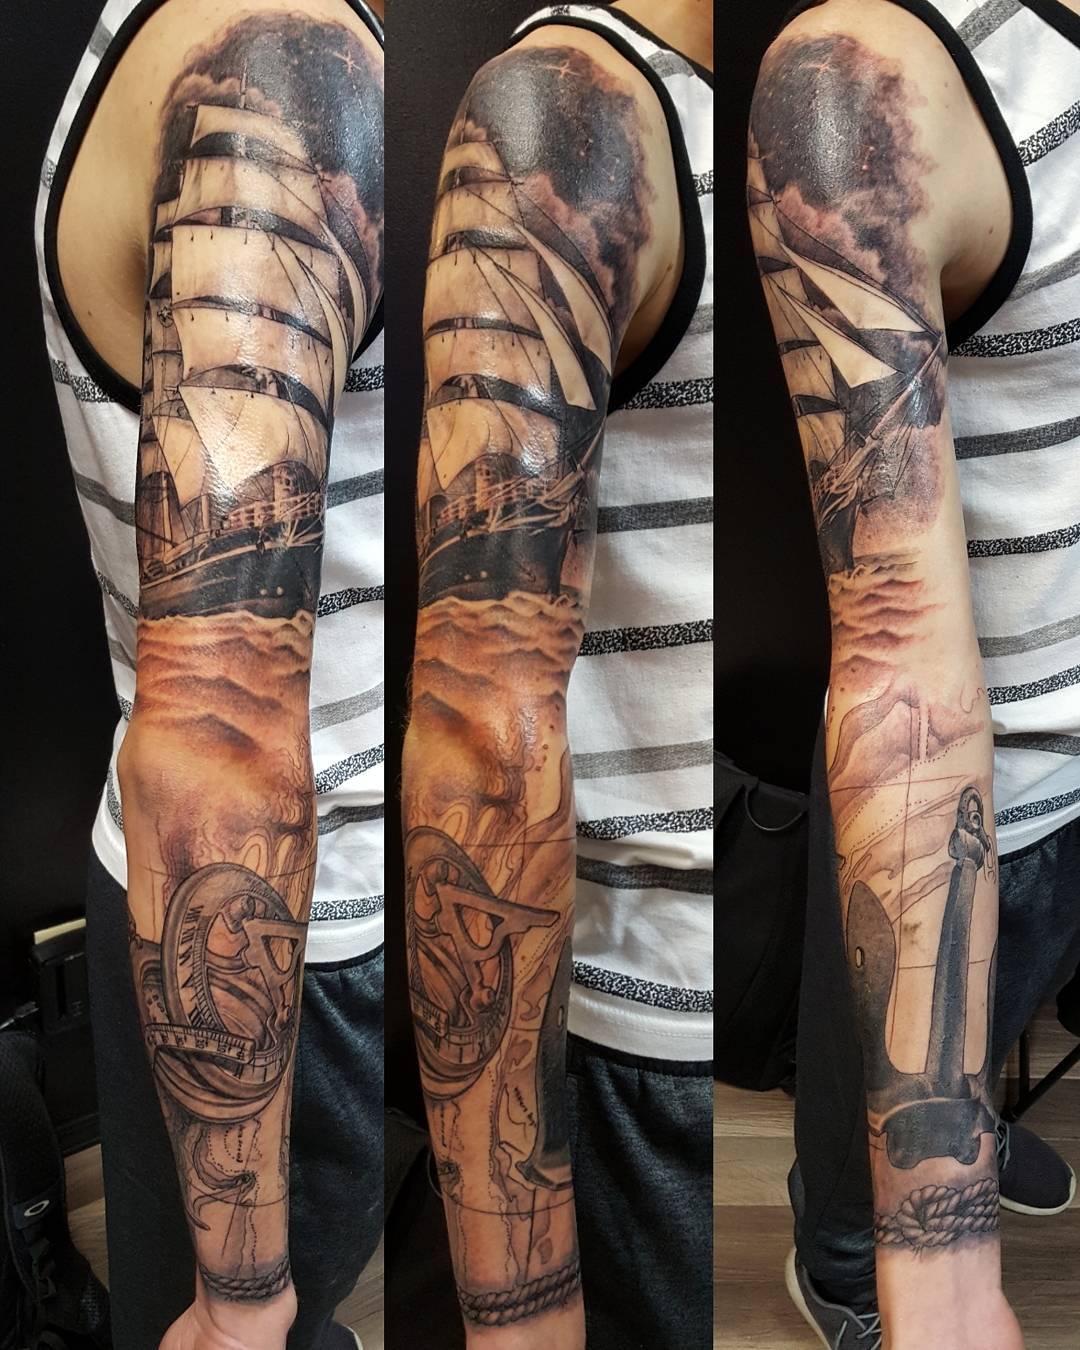 USN Full Sleeve Tattoo